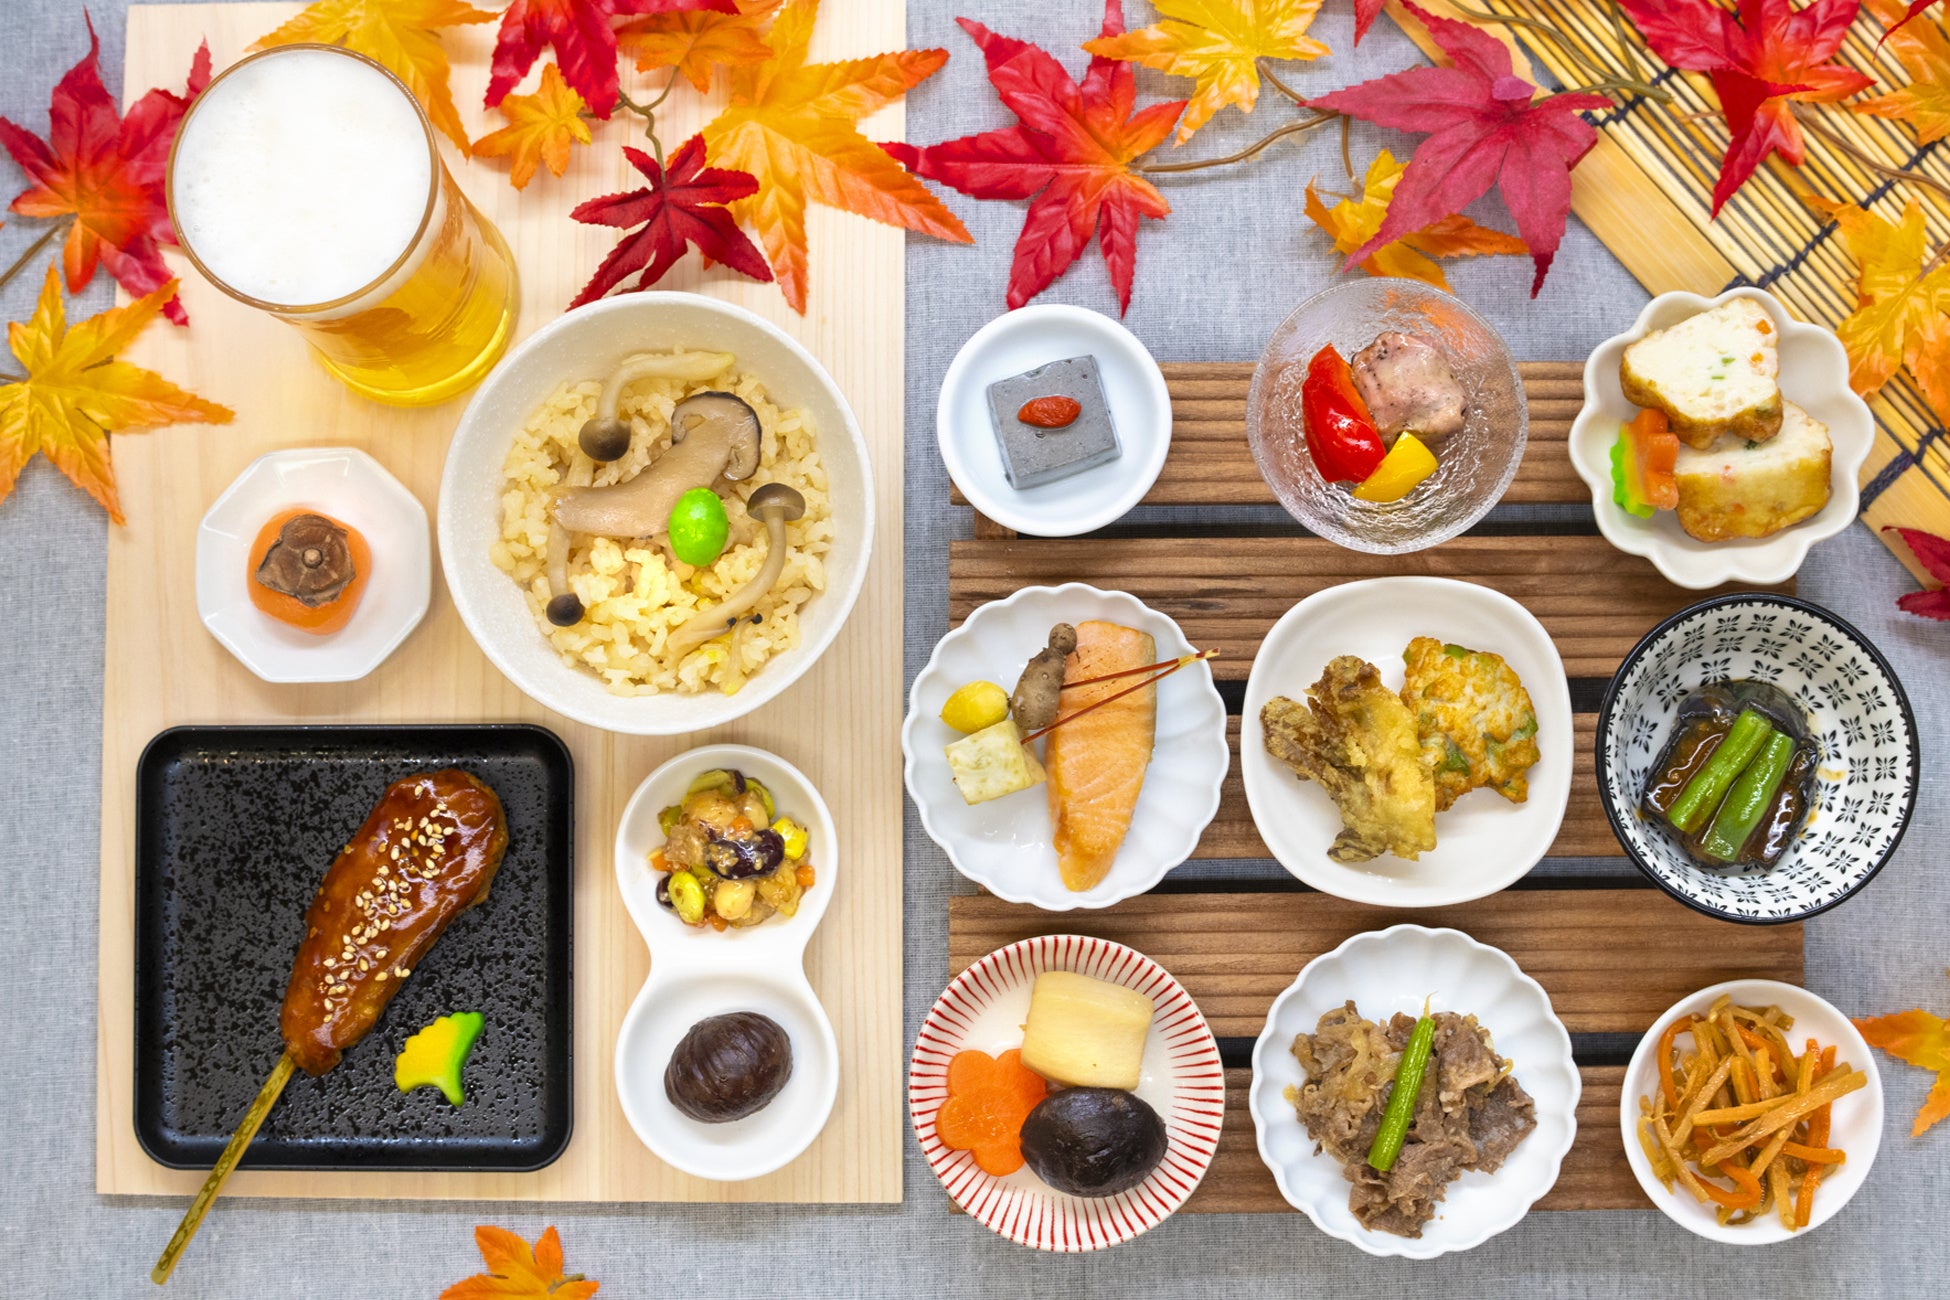 nonpi foodbox®、創業45周年を迎えた「神田明神下みやび」とのコラボシリーズより秋の味覚を楽しめるプランを8/23〜11/29の期間限定で販売。